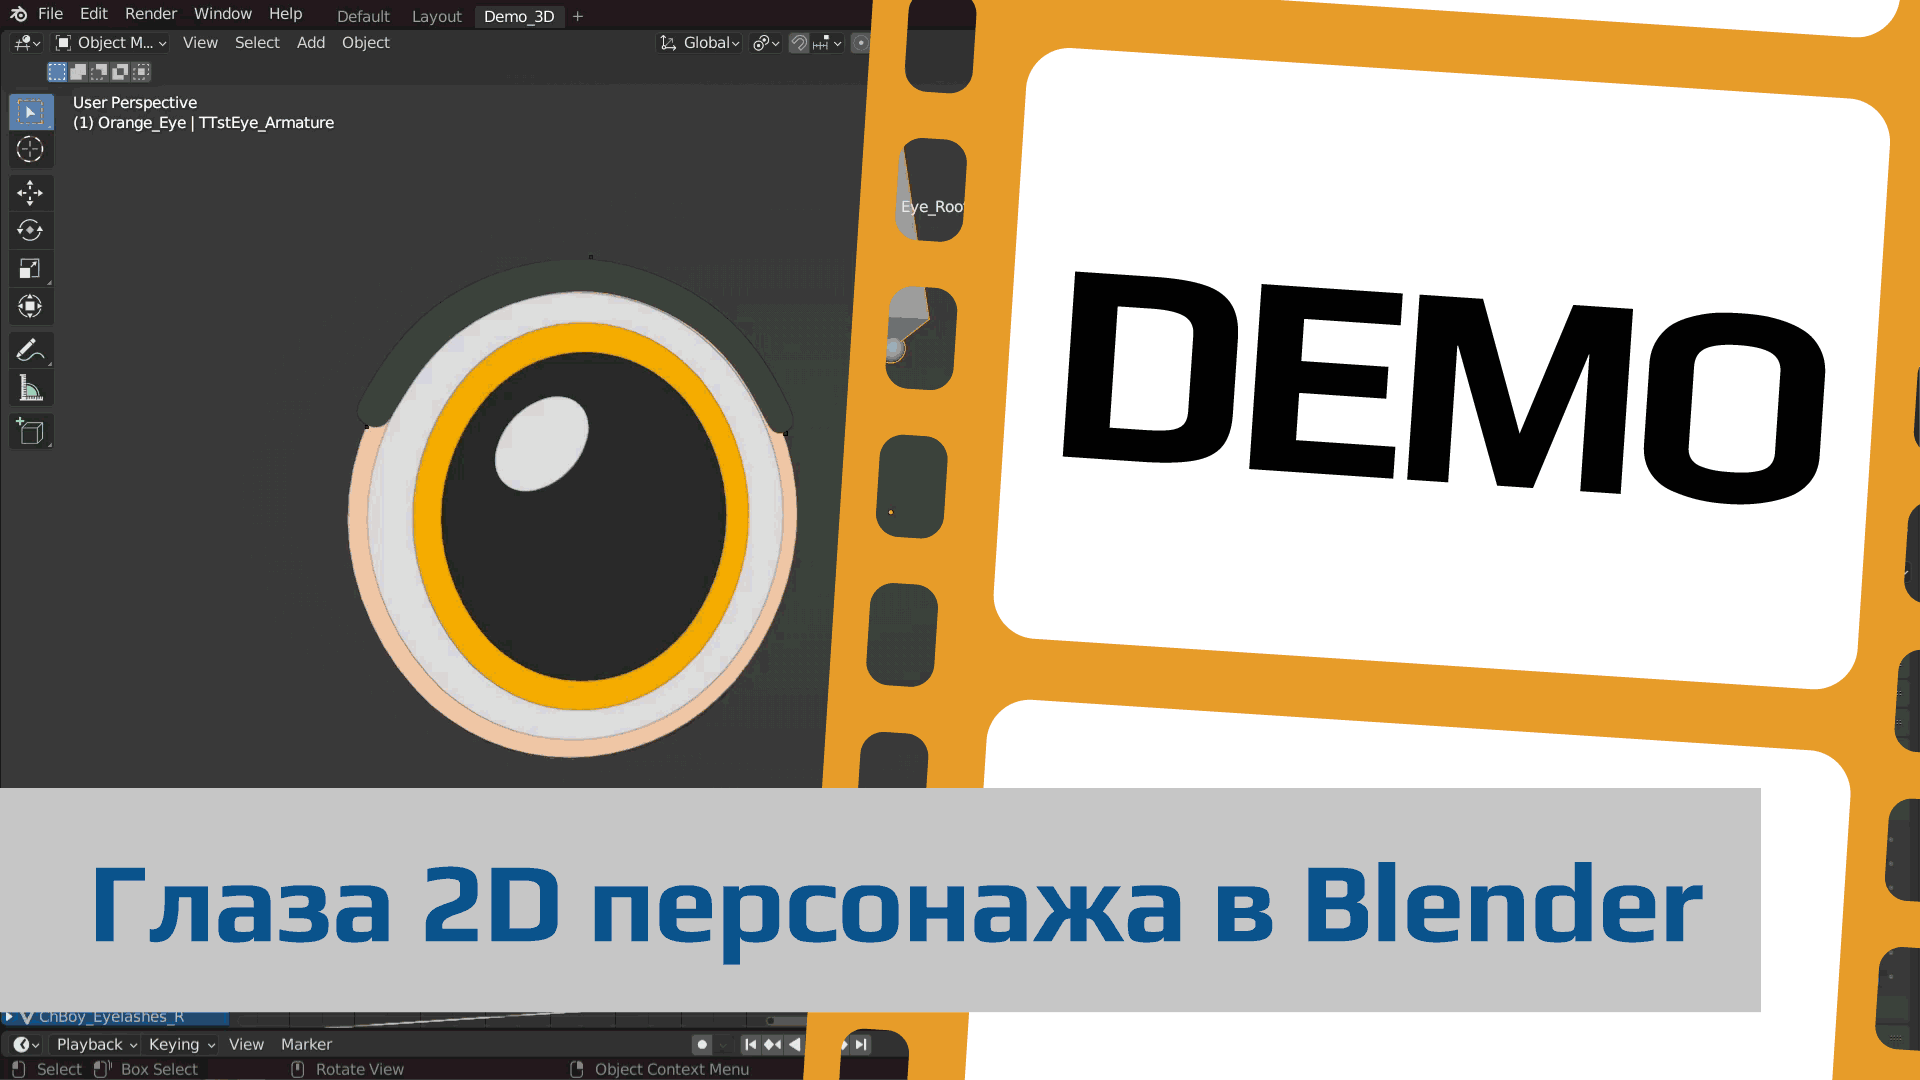 Демонстрационный ролик "Глаза 2D персонажа в Blender"